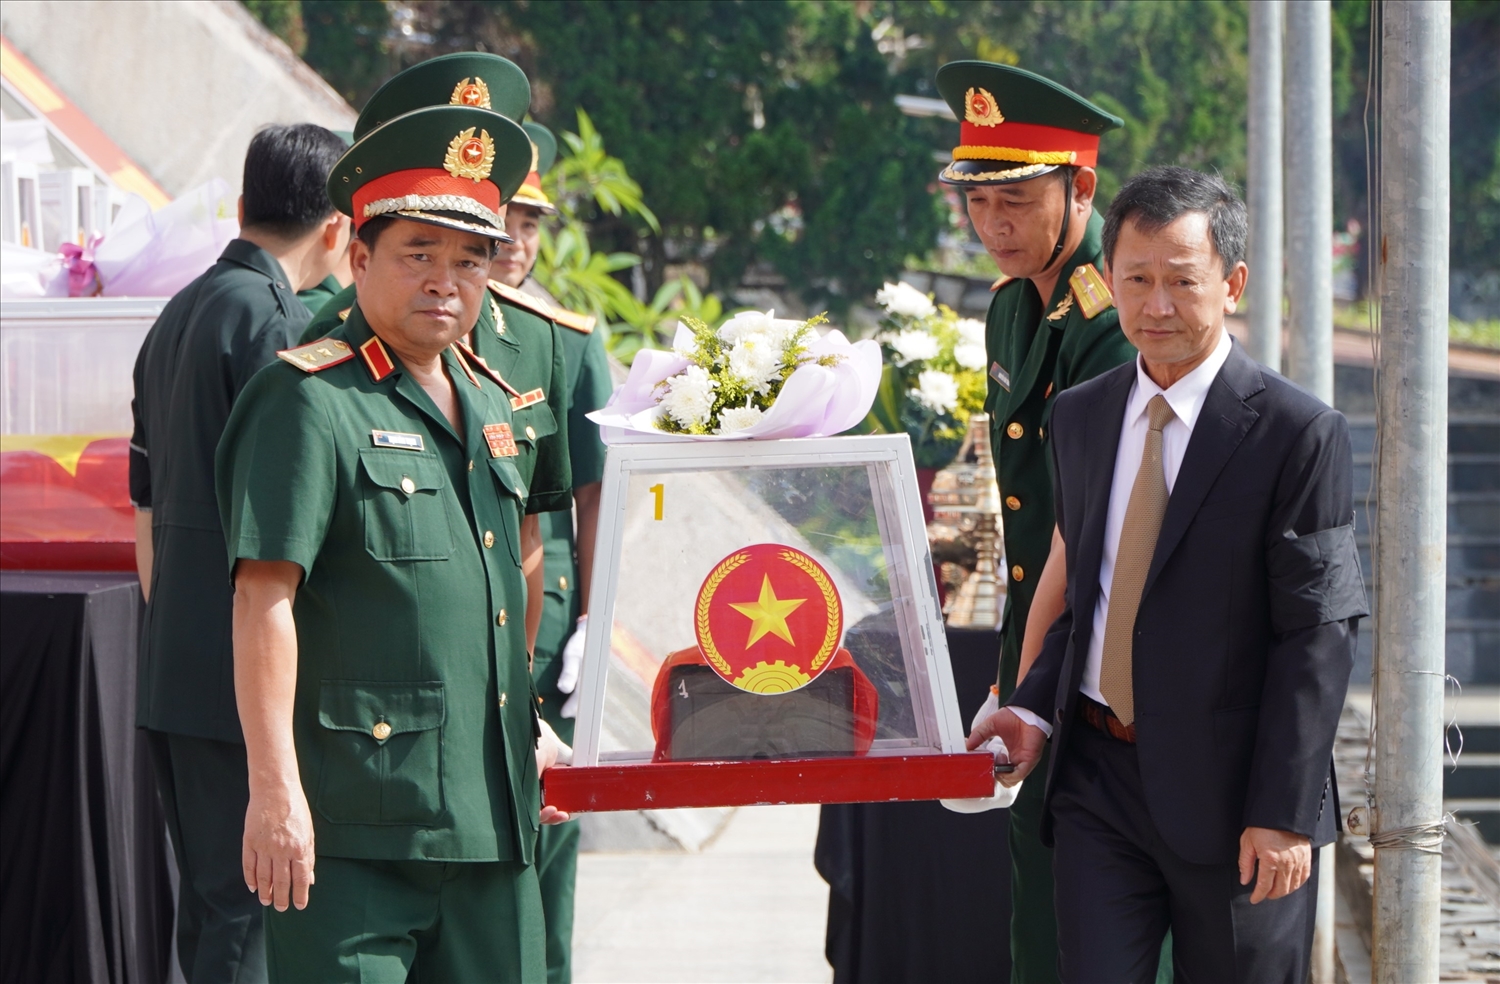 Lãnh đạo Quân khu 5, lãnh đạo tỉnh Kon Tum và nước bạn Lào, Campuchia đưa các liệt sĩ về nơi an nghỉ cuối cùng